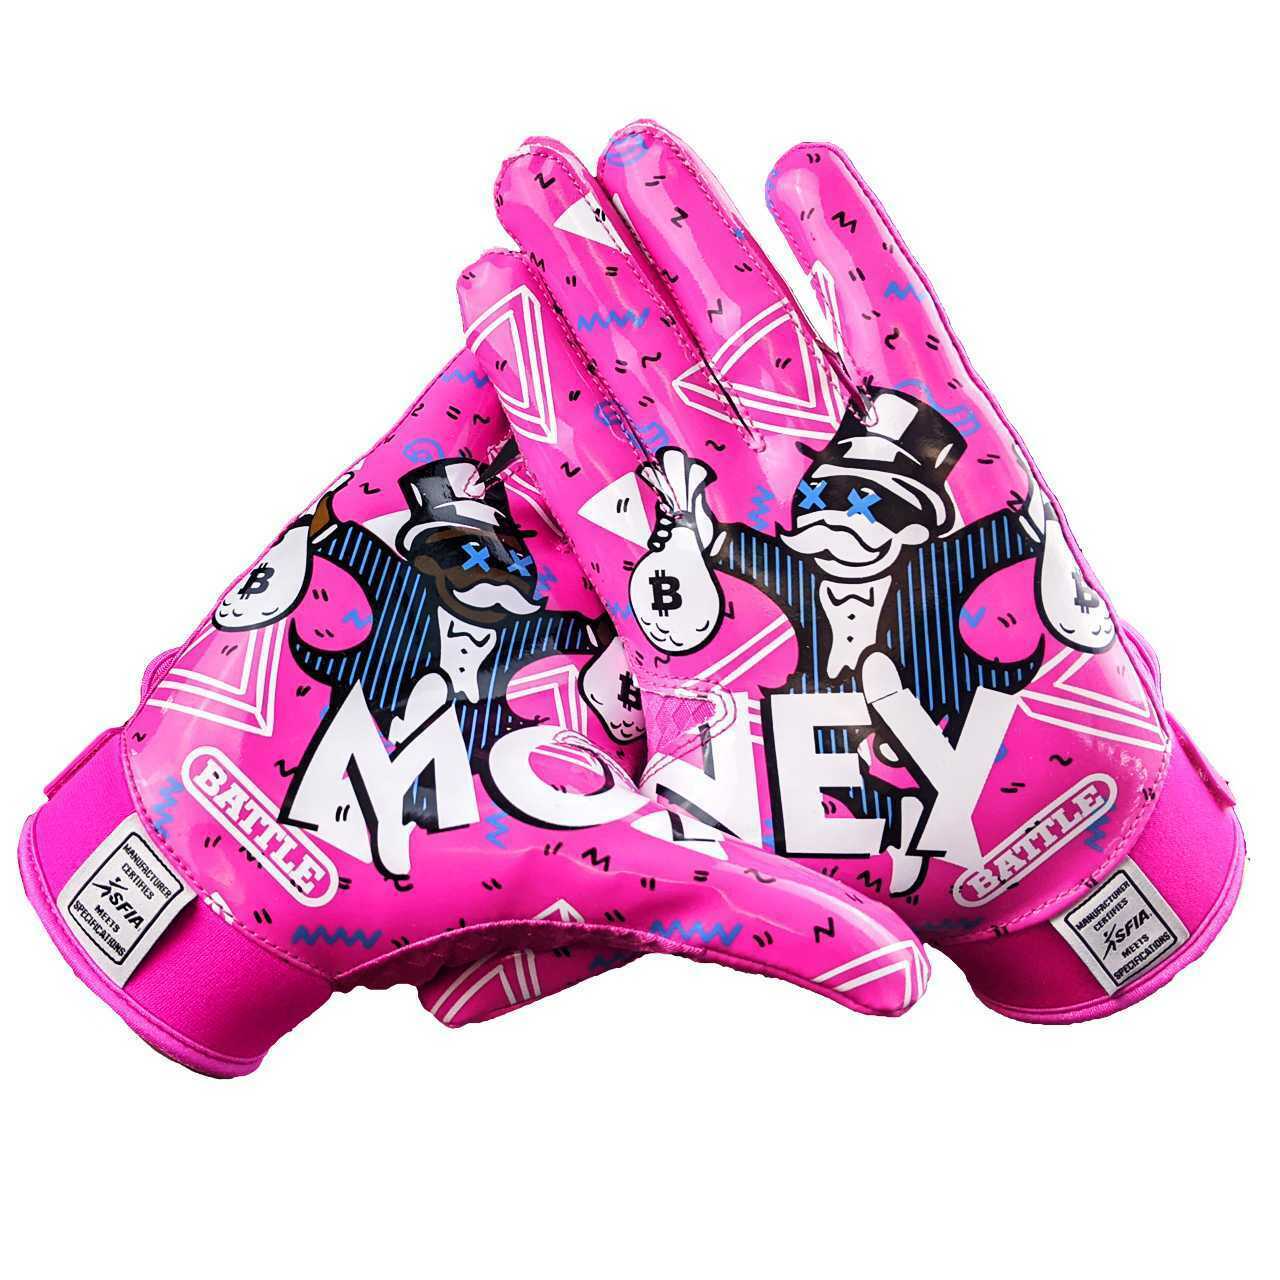 Battle Sport "Money Man 2.0" Gloves Adult - Skydive San Diego Retail